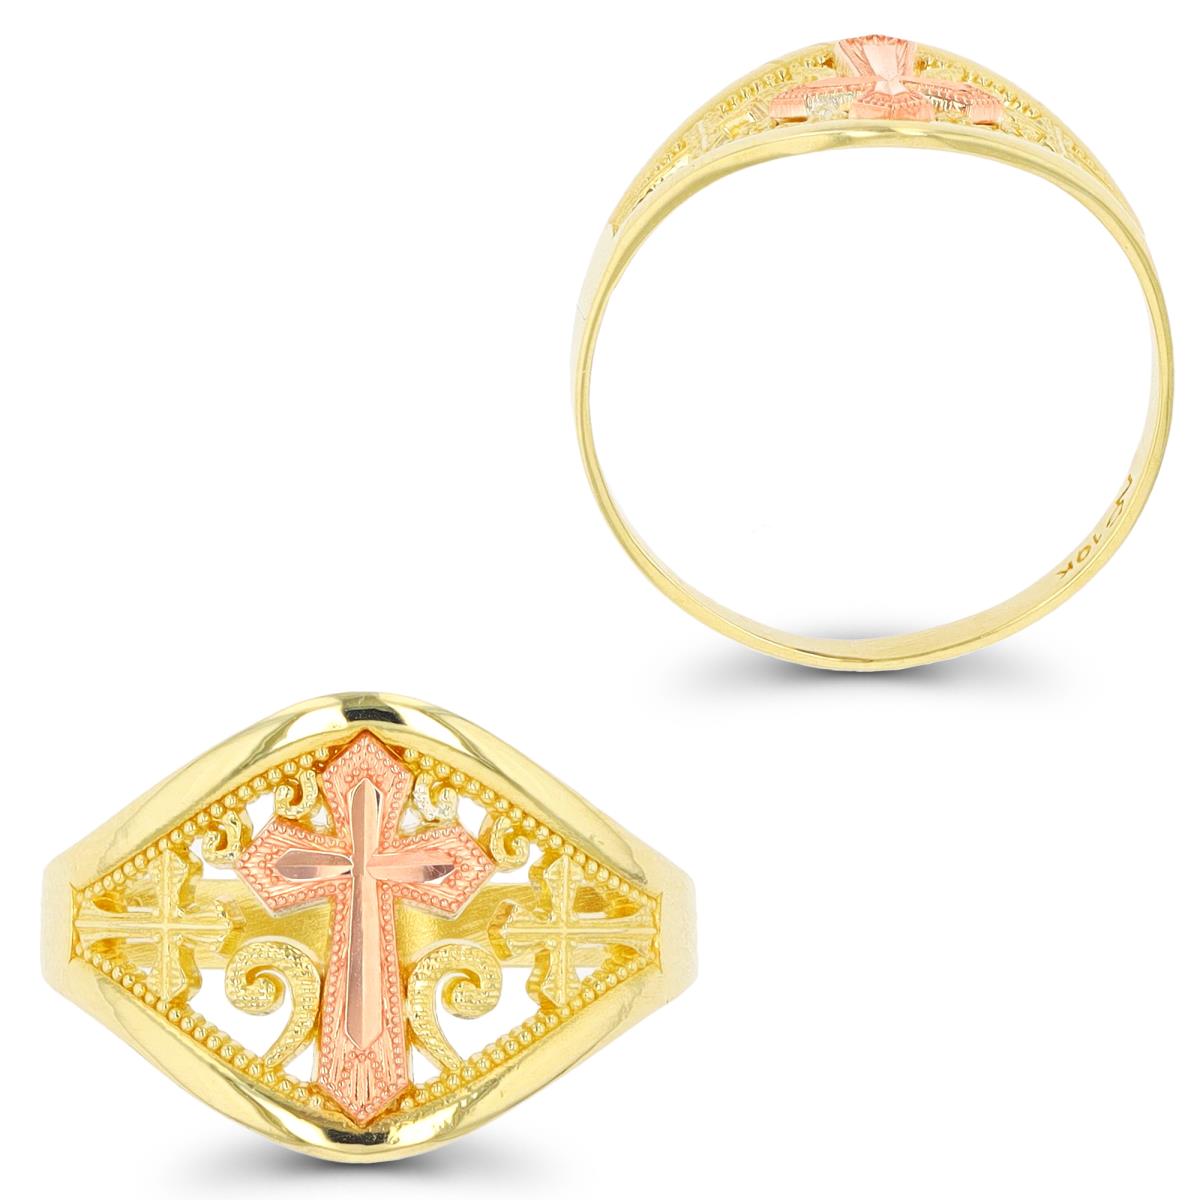 10K Yellow & Rose Gold Milgrain & DC Cross Religious Ring